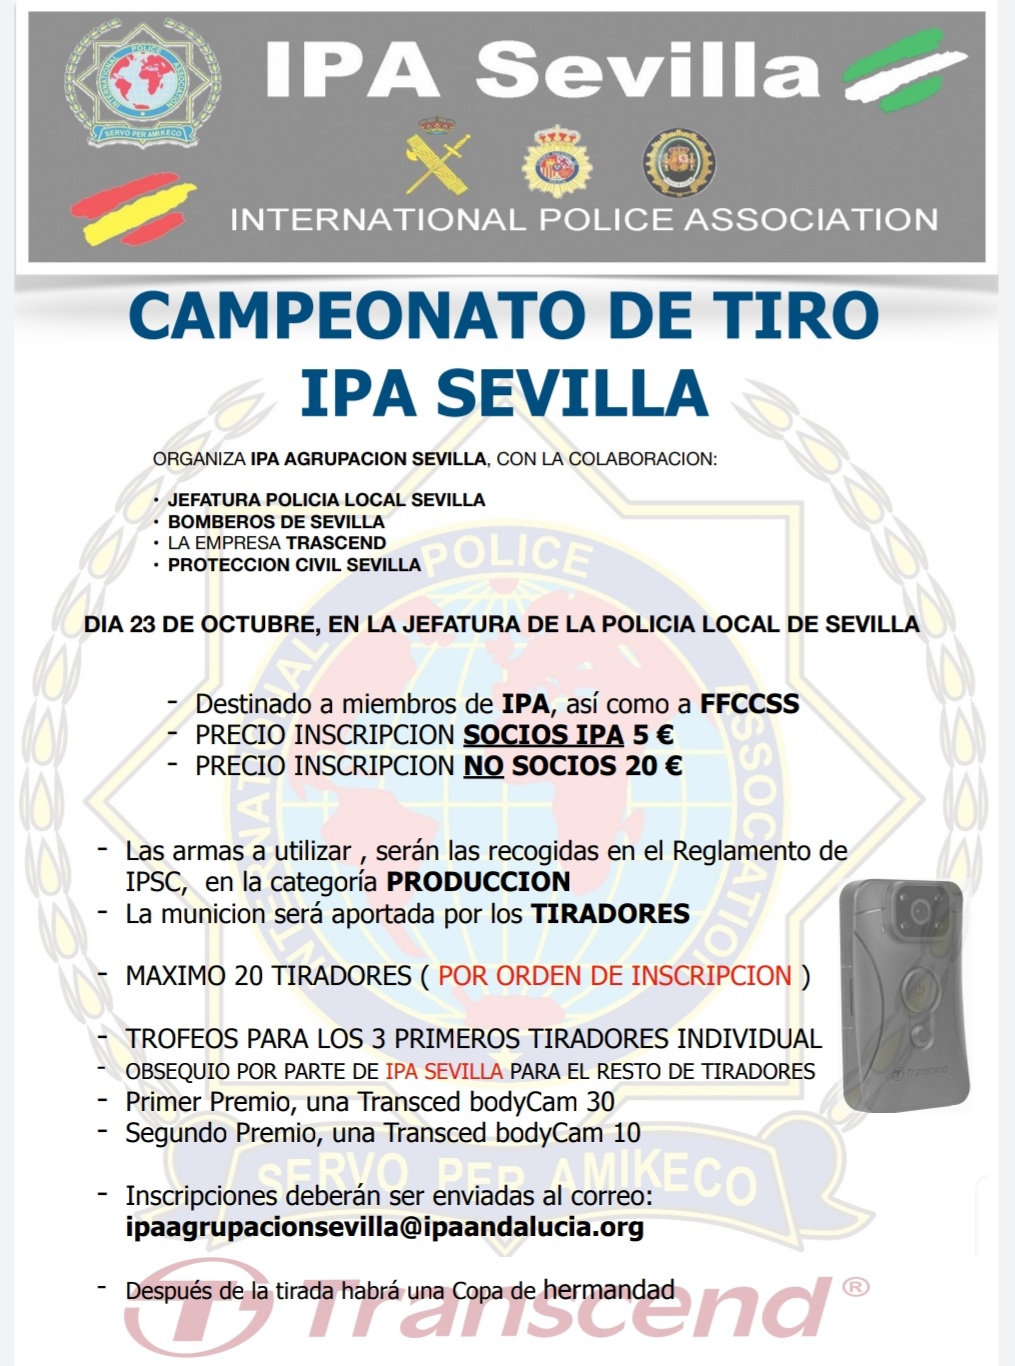 Campeonatro de Tiro IPA Sevilla